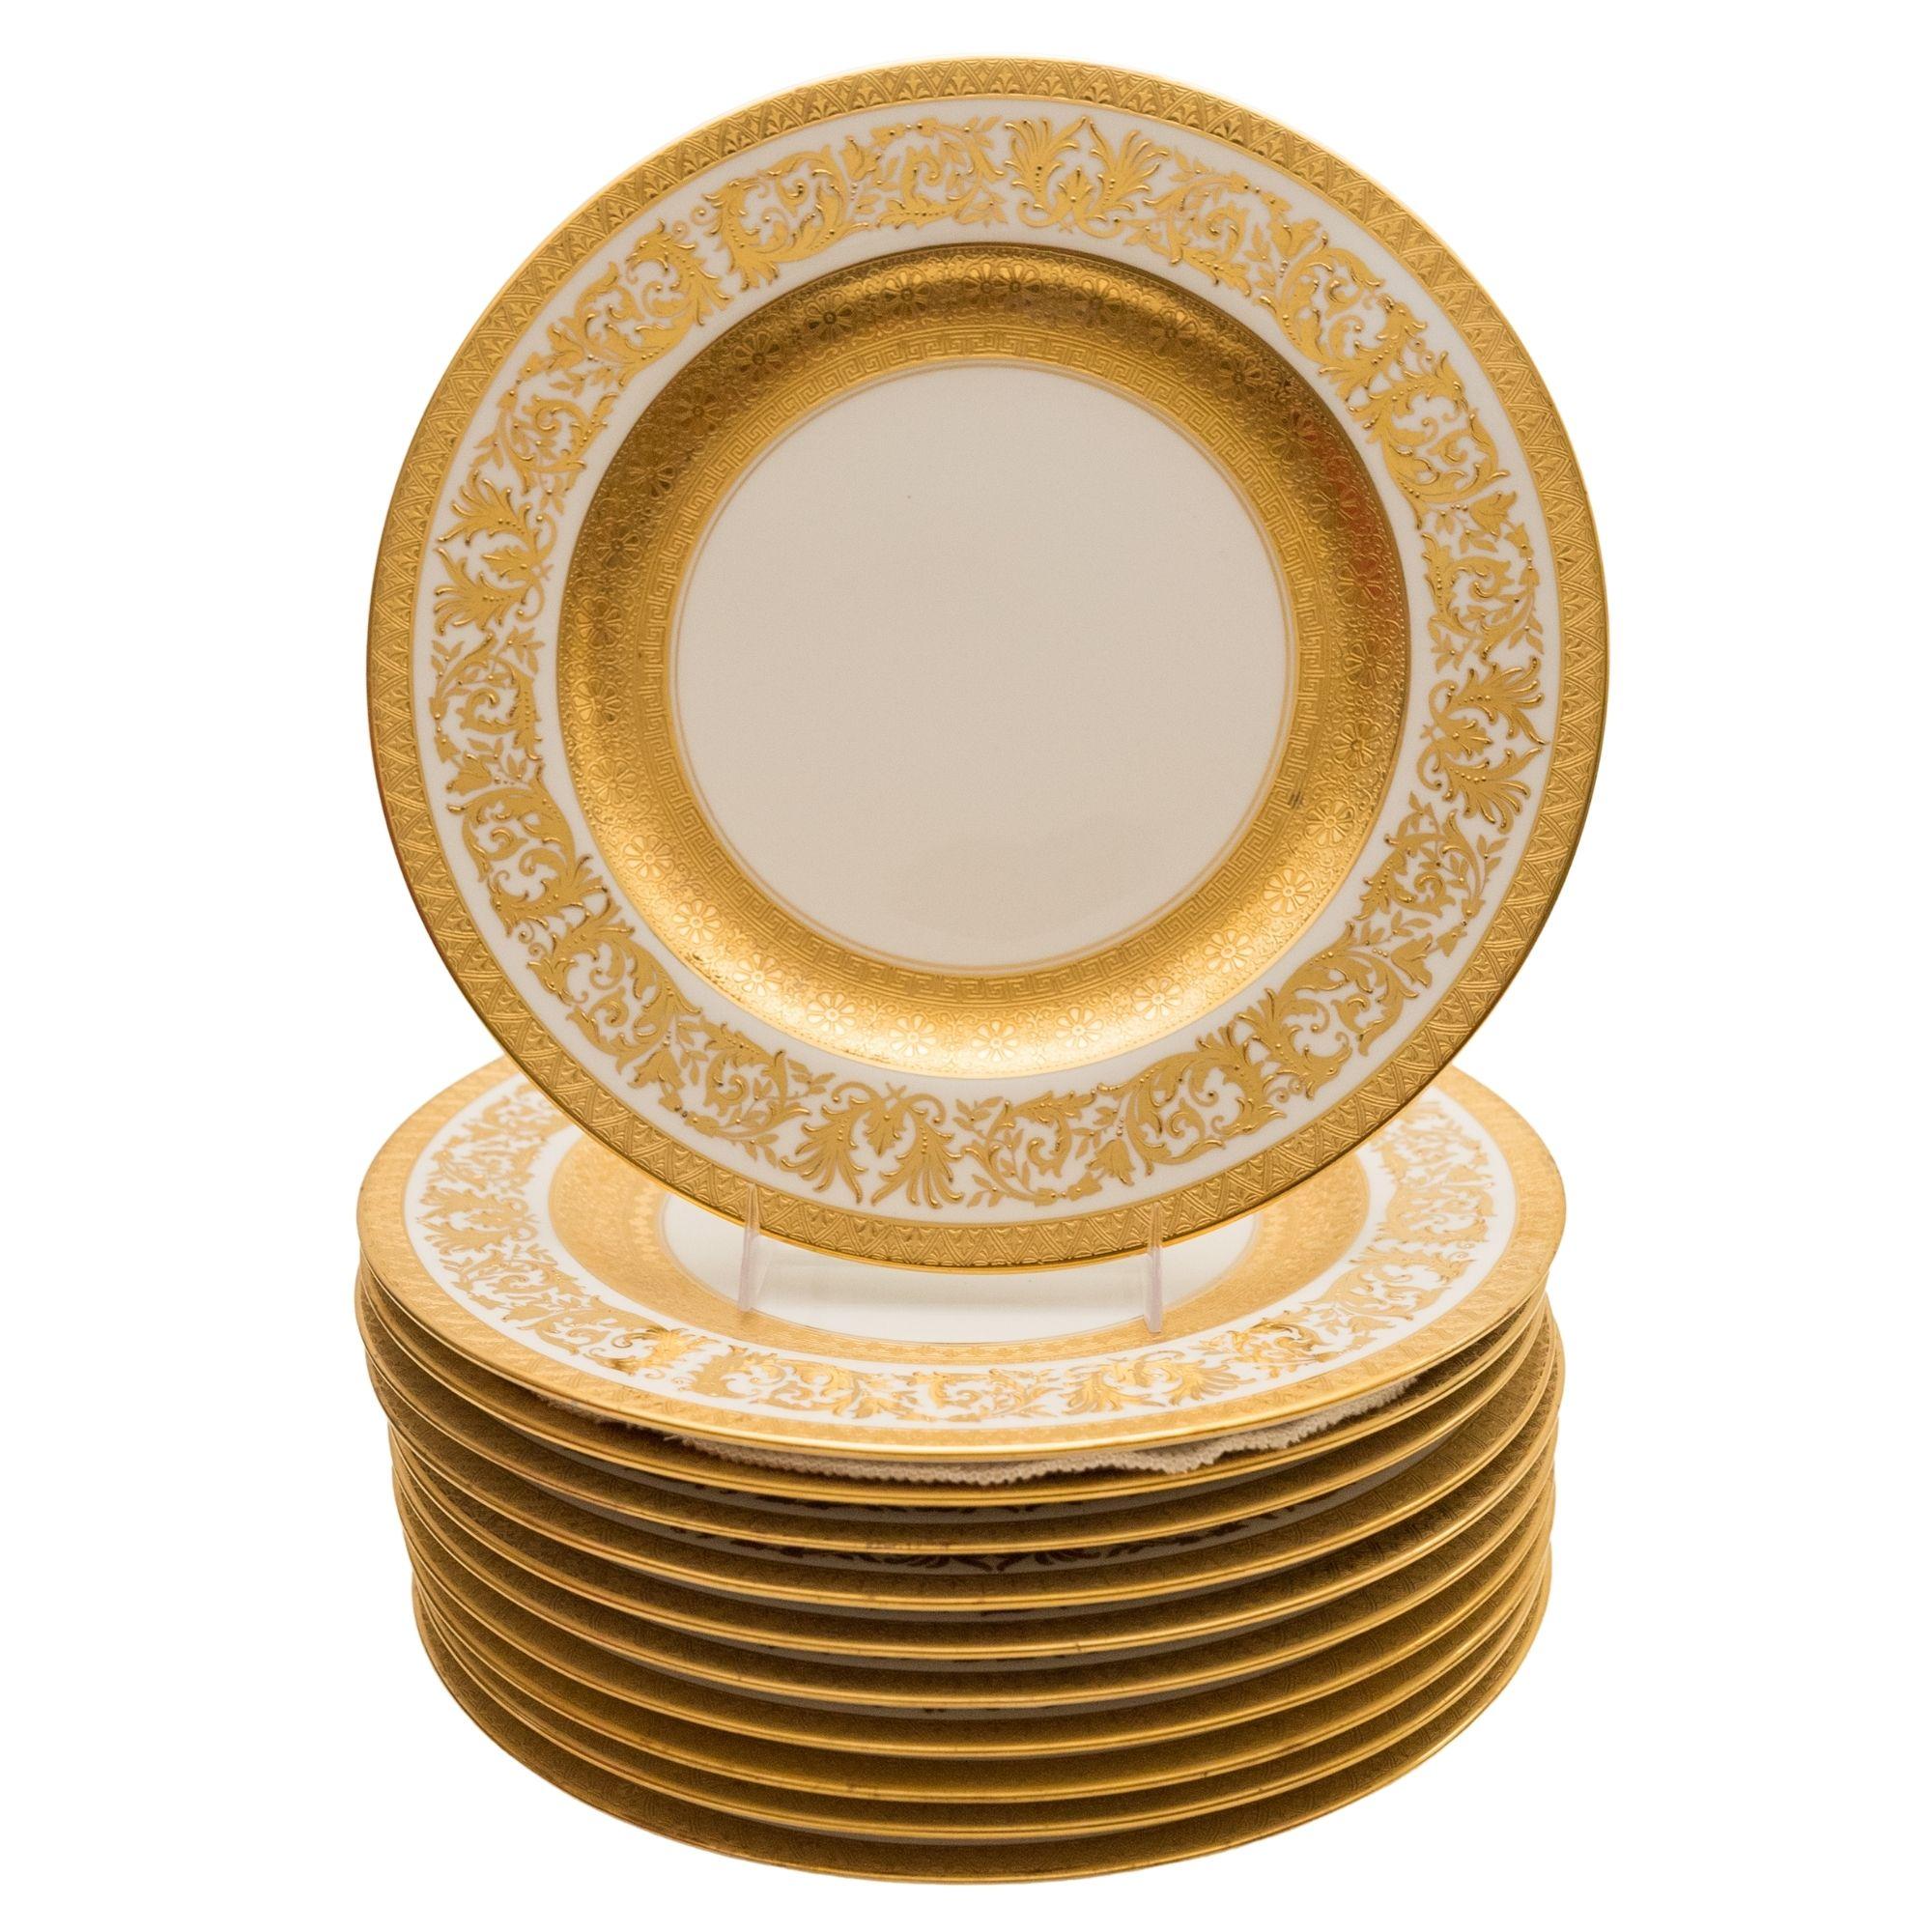 Von einer der besten Porzellanmanufakturen des Goldenen Zeitalters, Crown Staffordshire, stammt dieses Set aus elf Esstellern. Sie zeichnen sich durch eine schöne, erhabene Vergoldung des Kragens und ein extra breites goldenes Innenband aus.